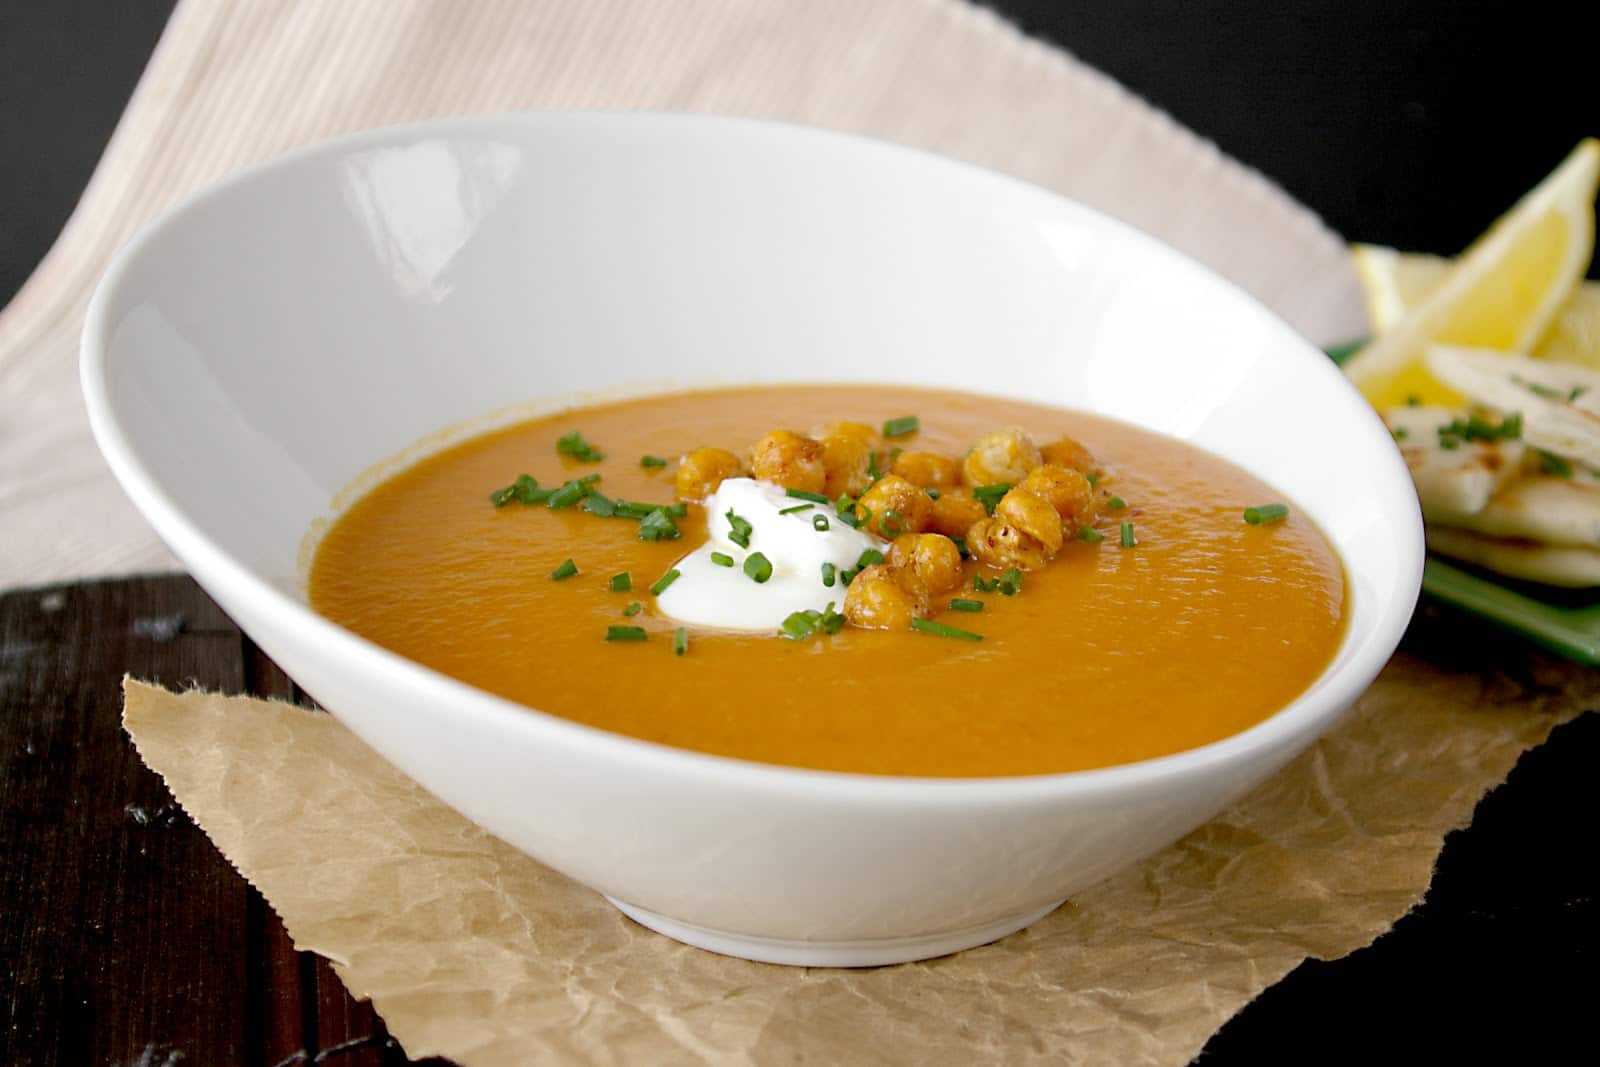 Суп овсяный слизистый вегетарианский пюре из отварной моркови